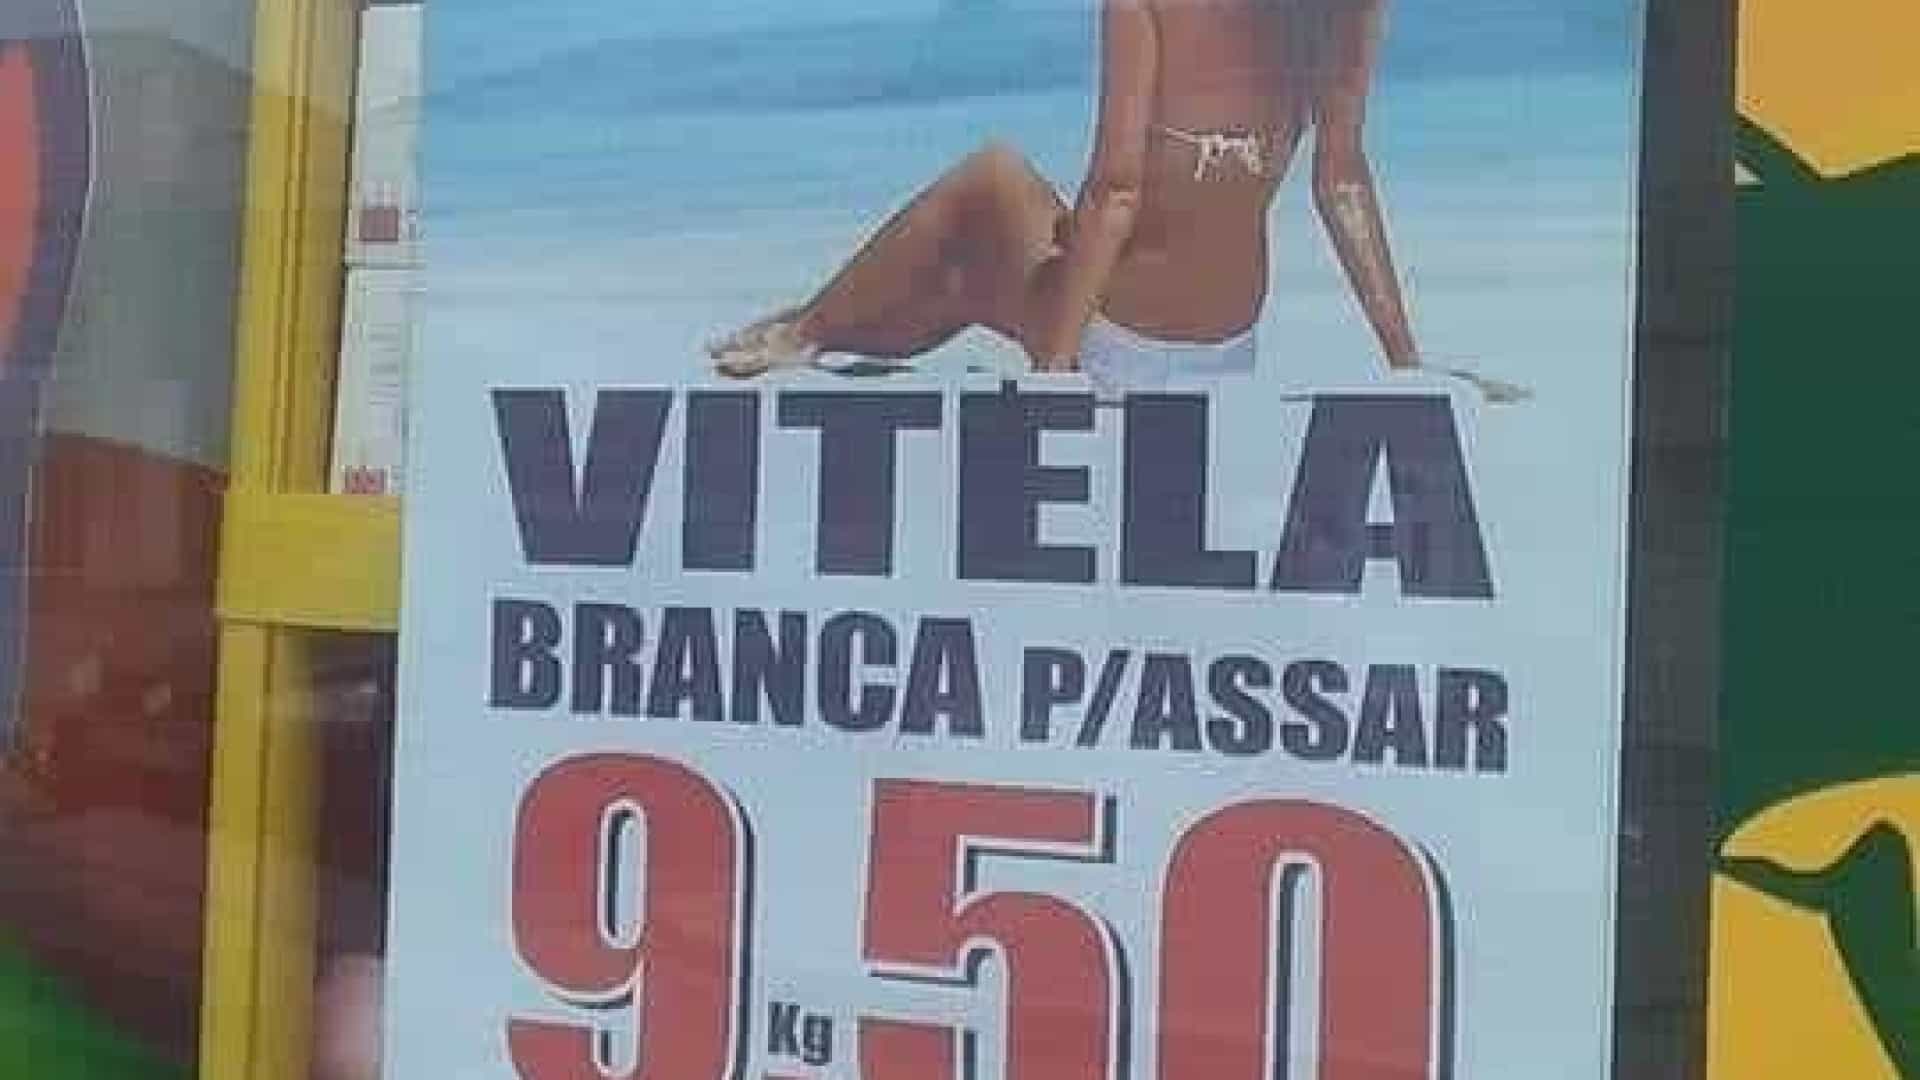 Publicidade de venda de carne usa imagem de mulher na praia